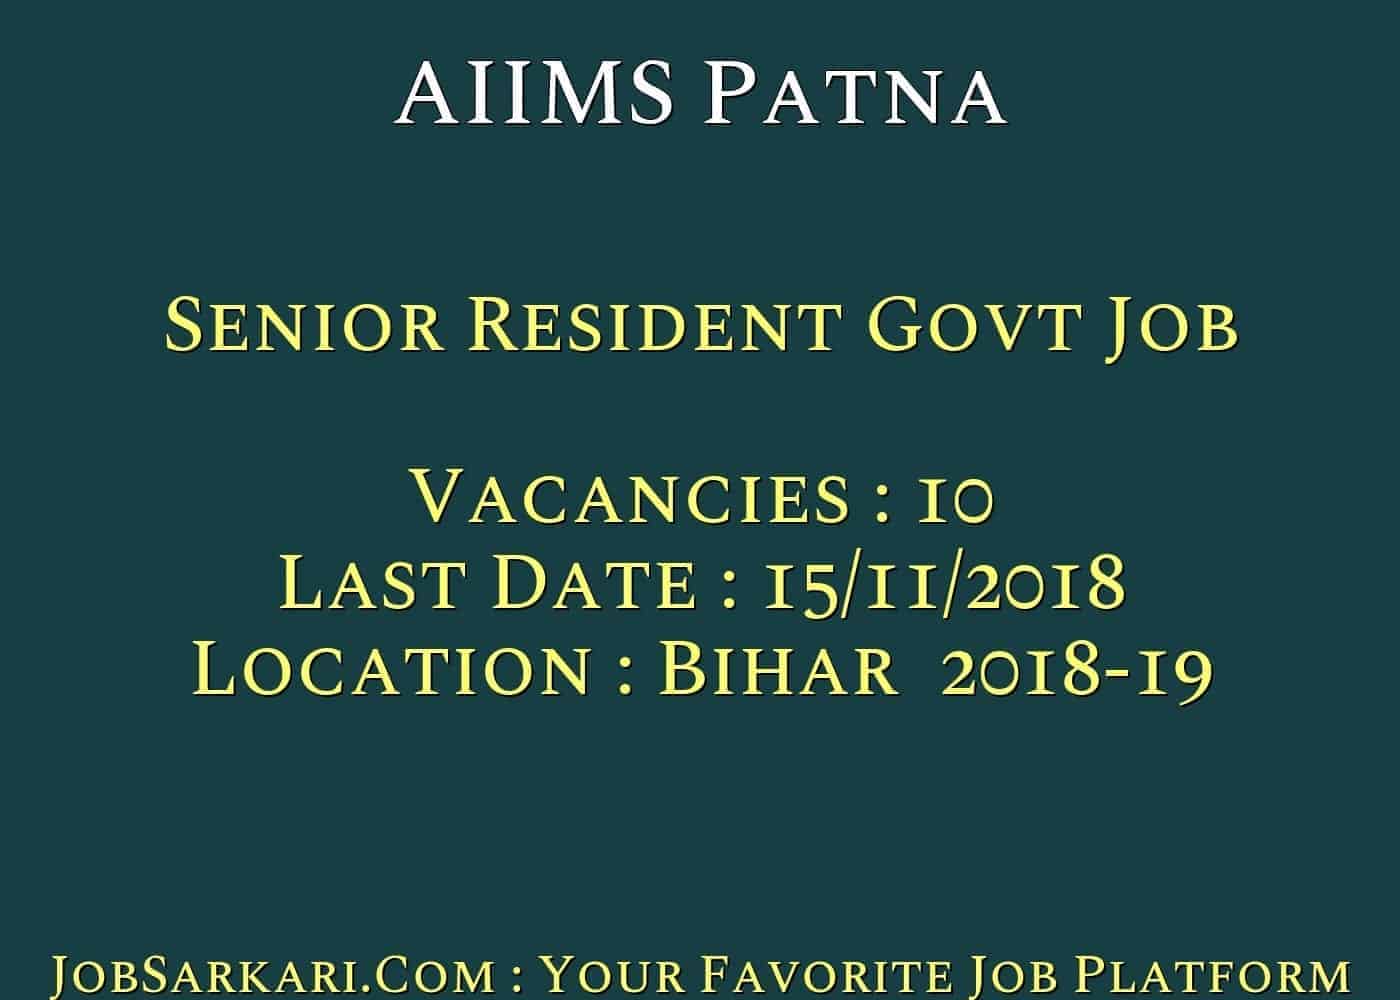 AIIMS Patna Recruitment 2018 For Senior Resident Govt Job